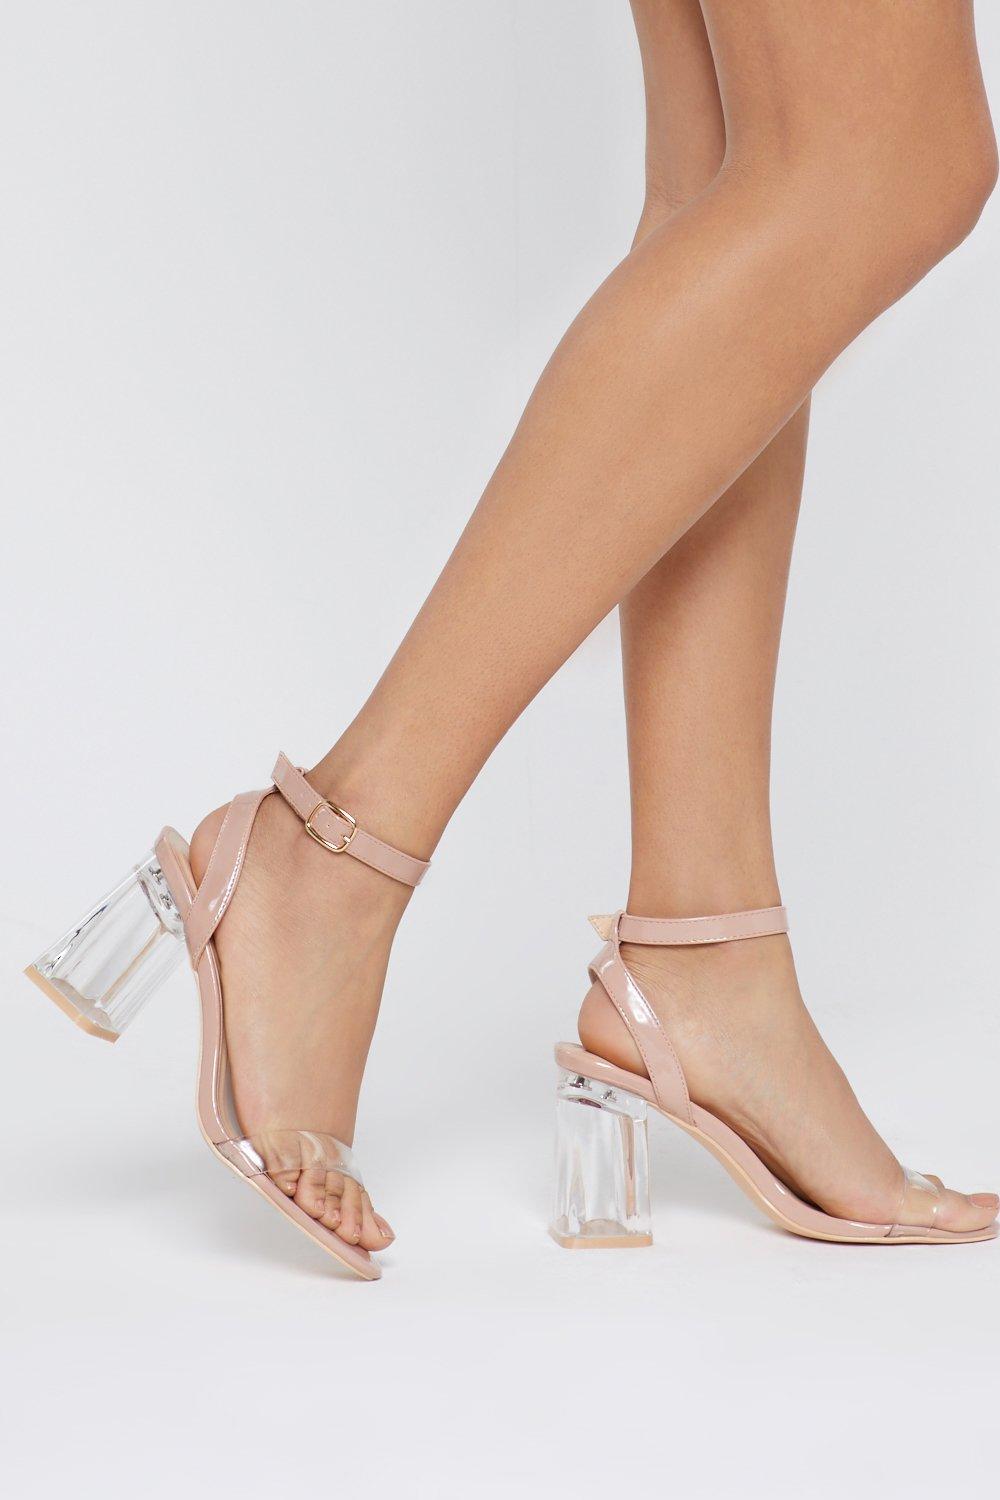 clear heels block heel